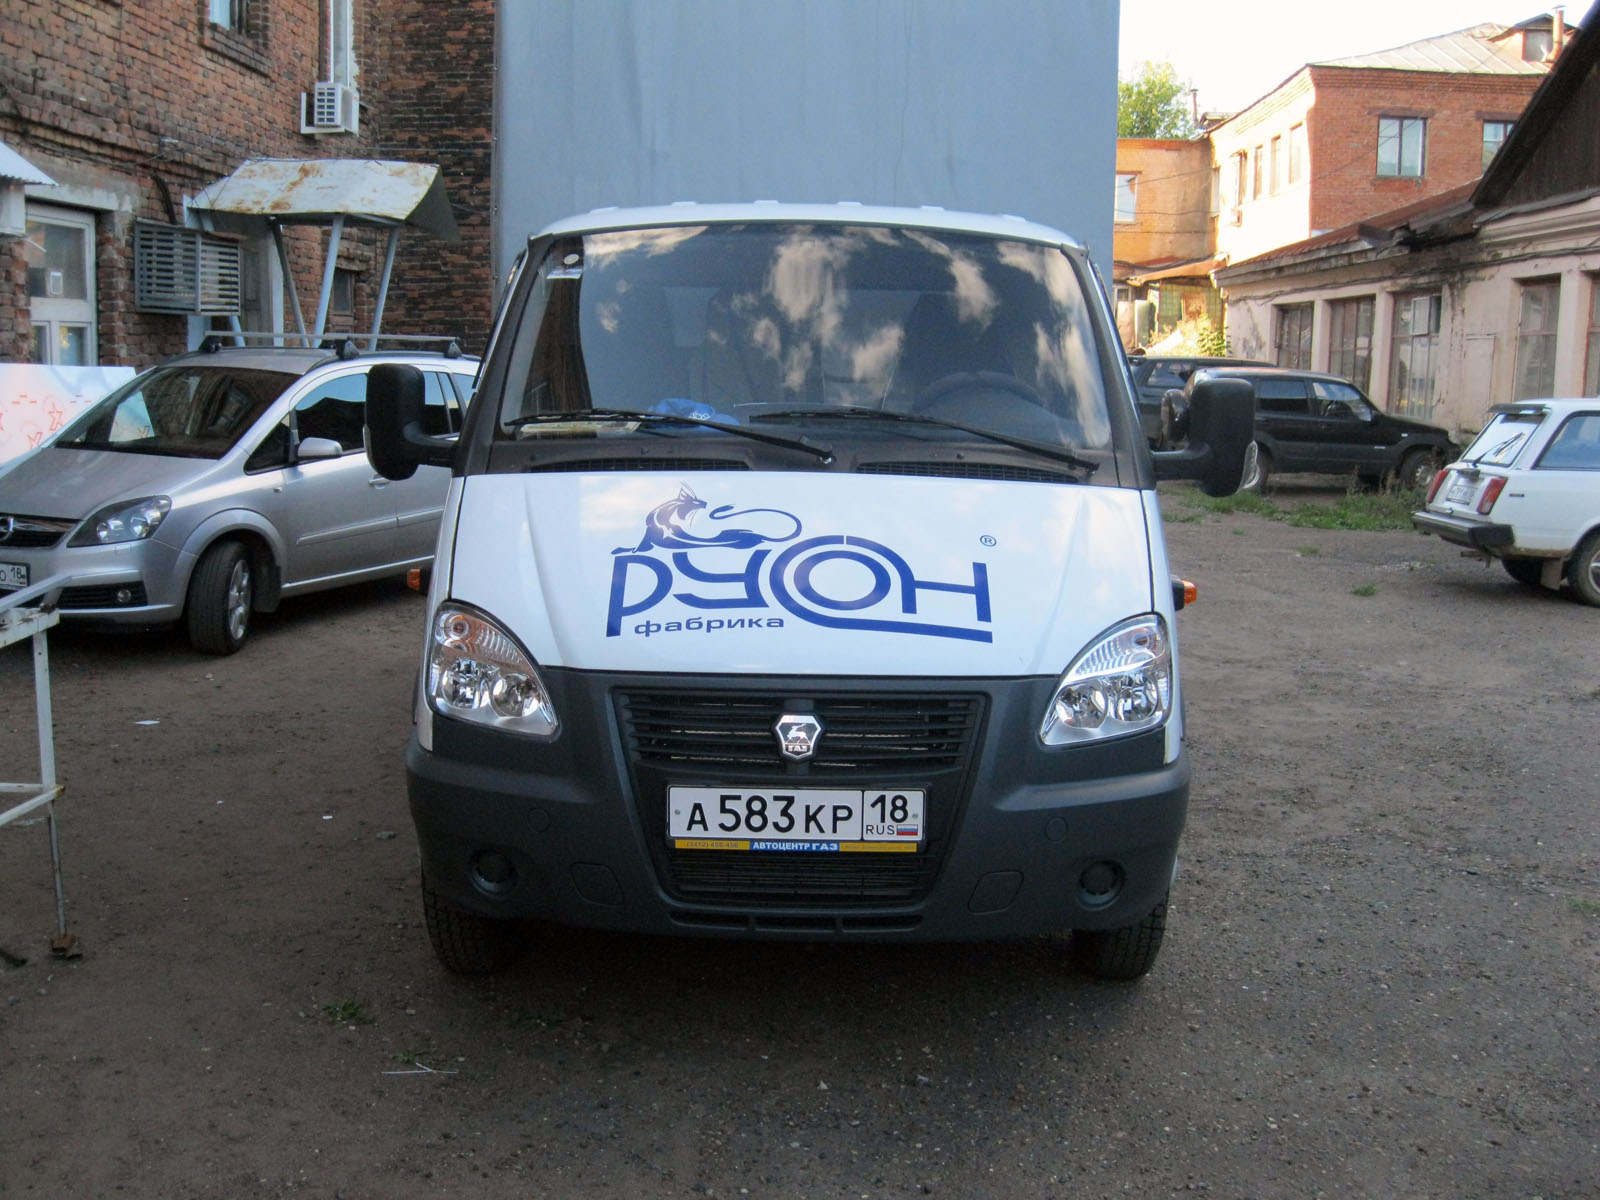 Оформление грузового автомобиля компании РуСон Ижевск